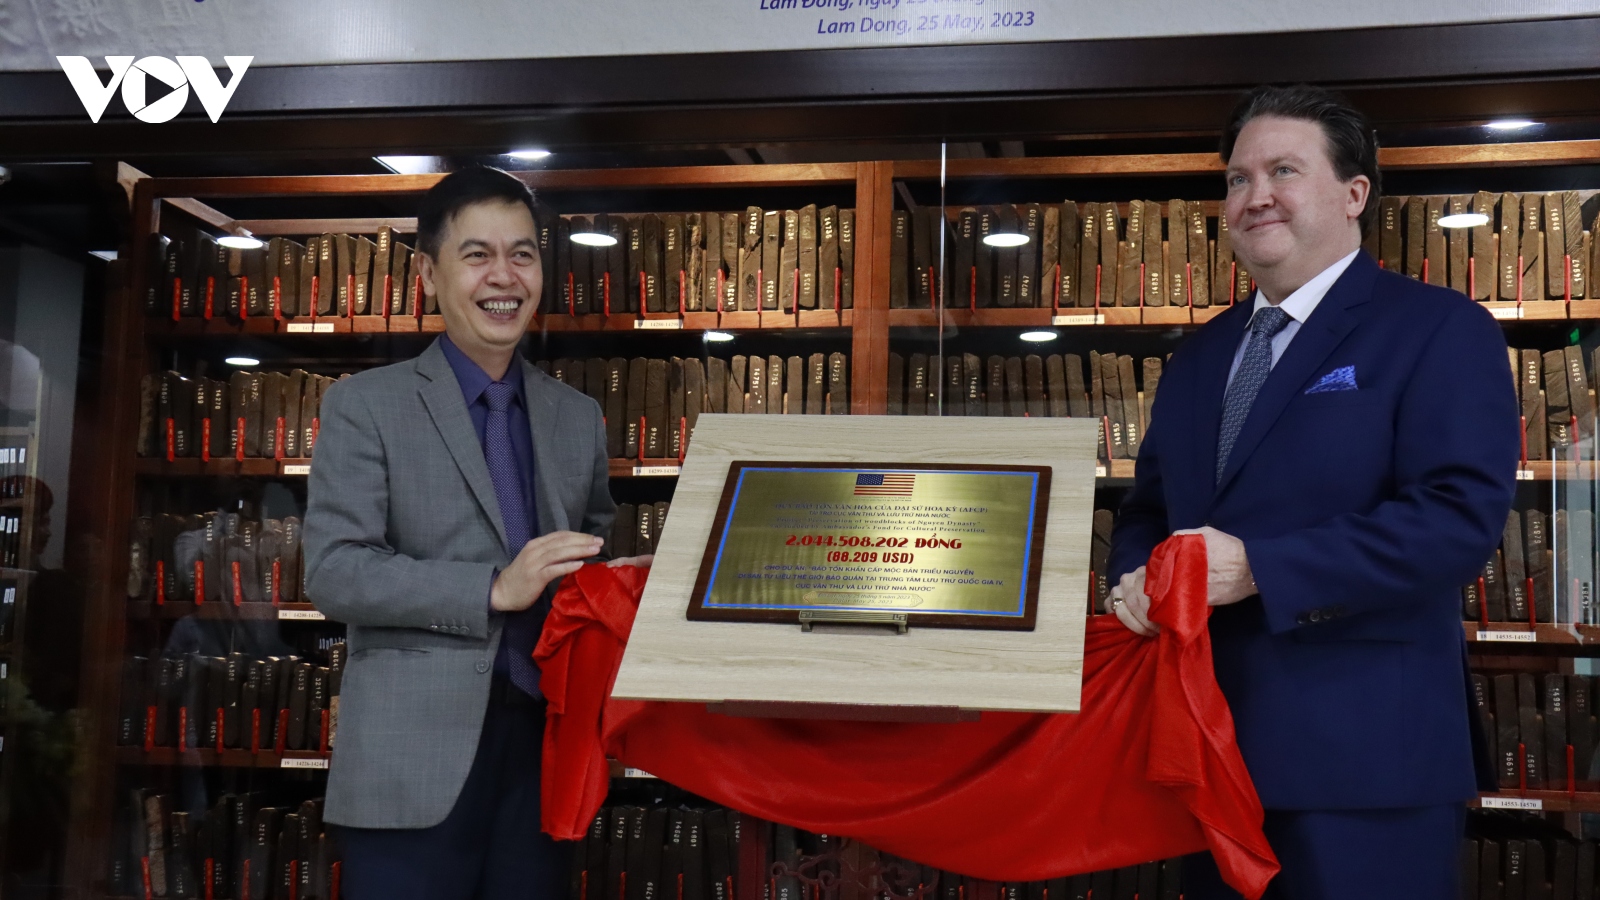 Quỹ Bảo tồn Văn hóa của Đại sứ Hoa Kỳ tài trợ bảo tồn mộc bản triều Nguyễn